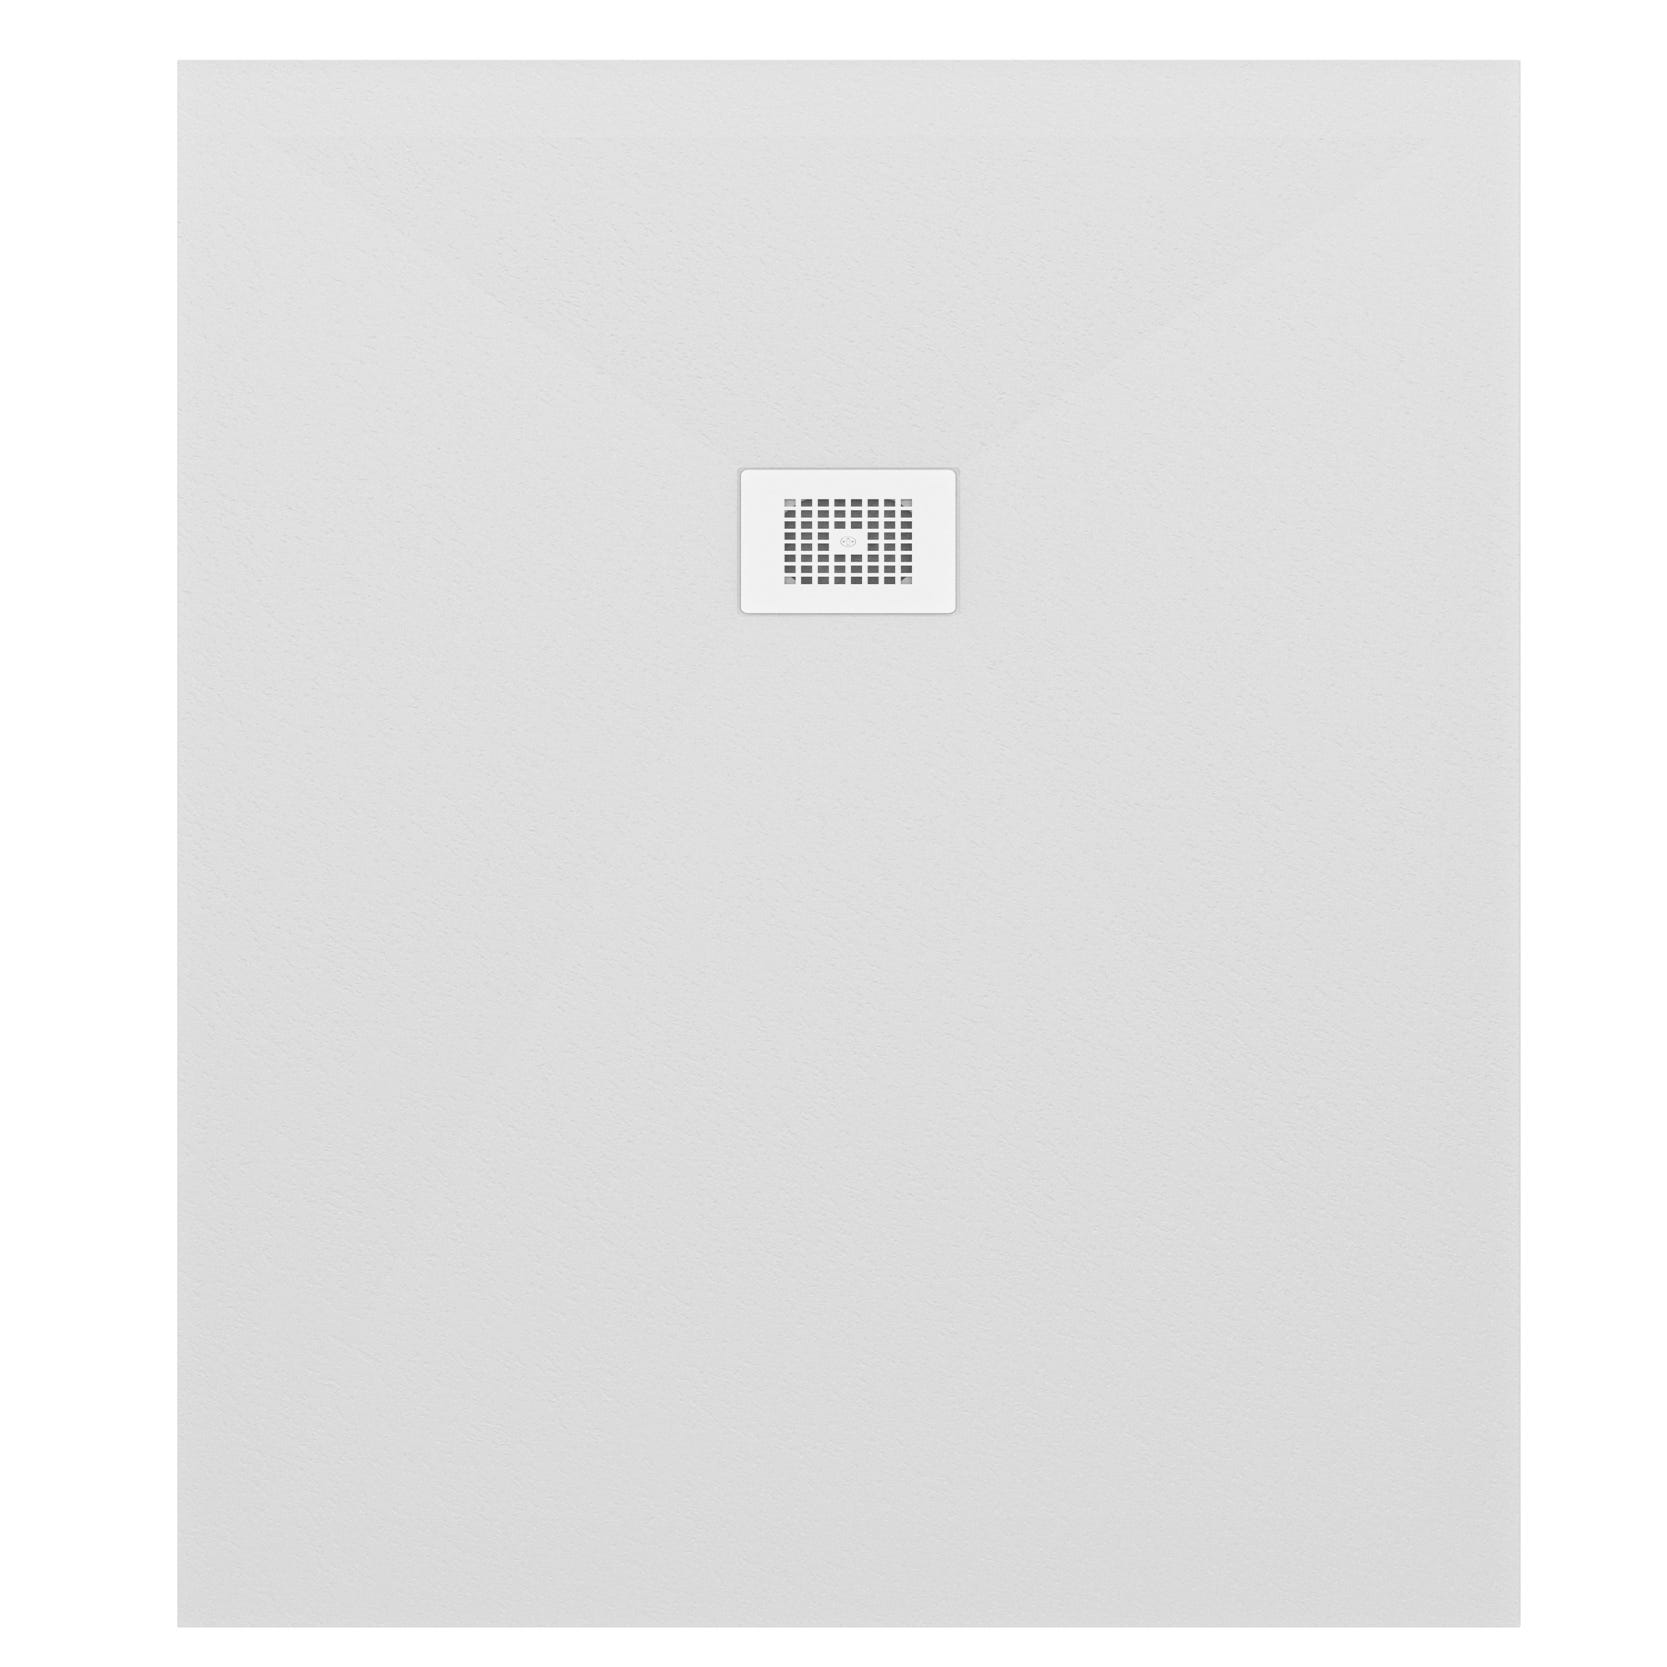 Plato Ducha de Resina Extraplano Efecto Marmol, 110 x 80 cm, Antideslizante Textura Lisa, Incluye Válvula de Desagüe y Rejilla, Marmol  Oscuro